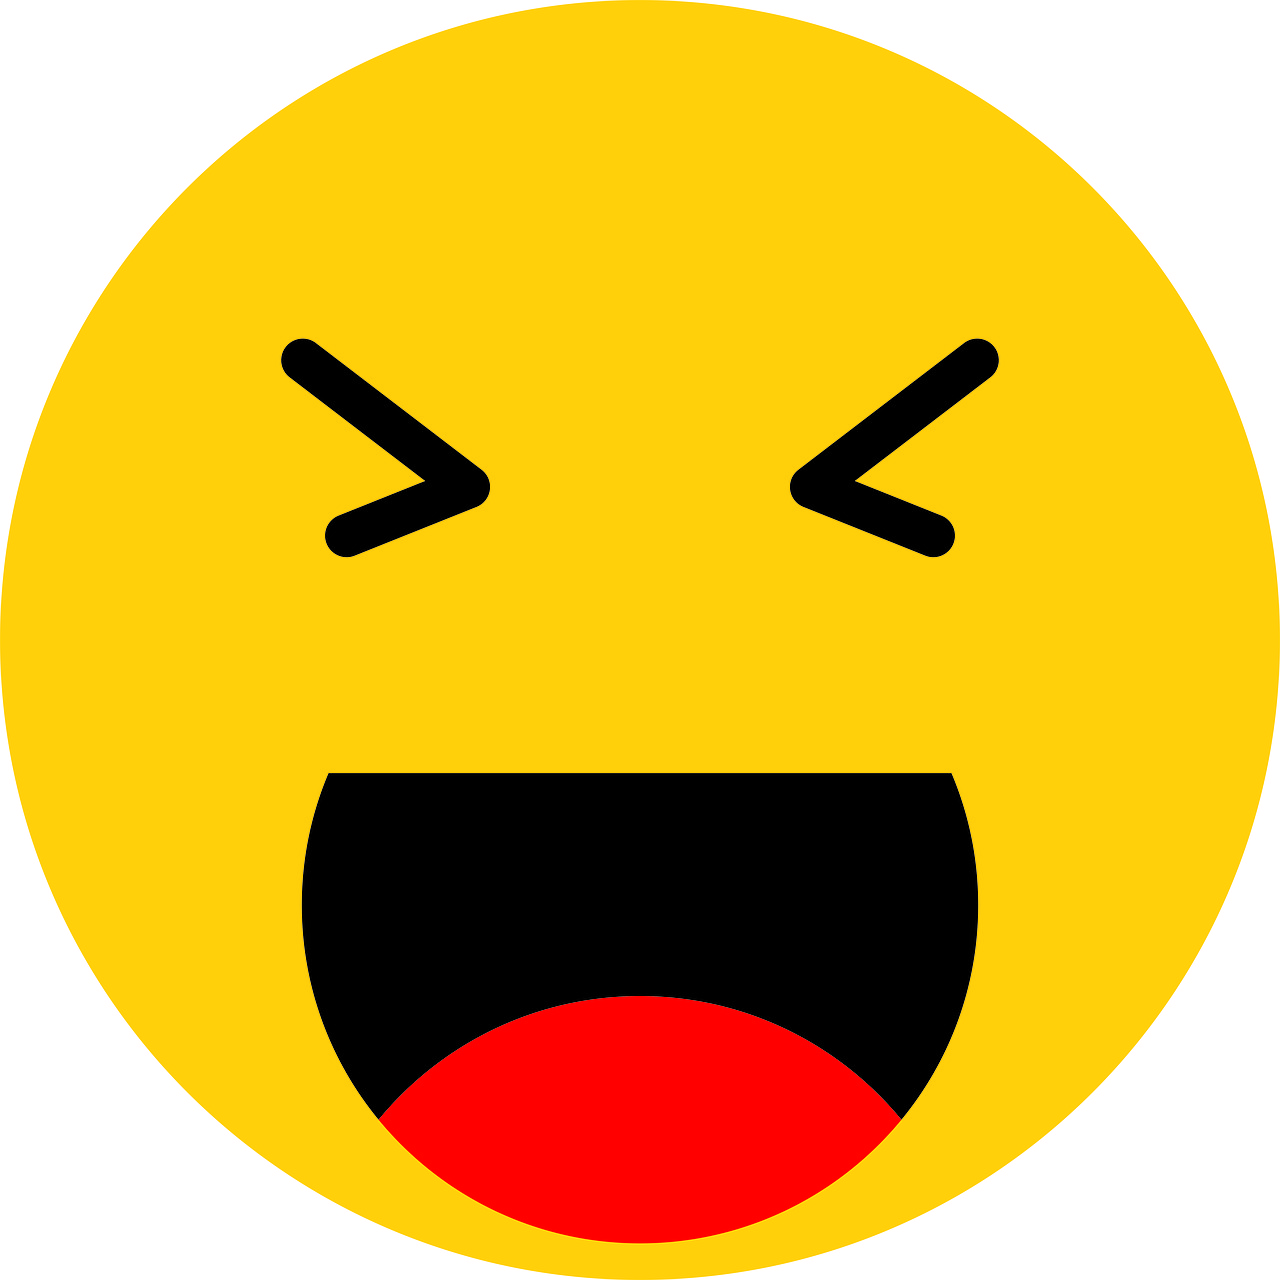 Su Facebook, ma non solo, l'emoji sorridente è usata in modo distorto per esprimere derisione e odio